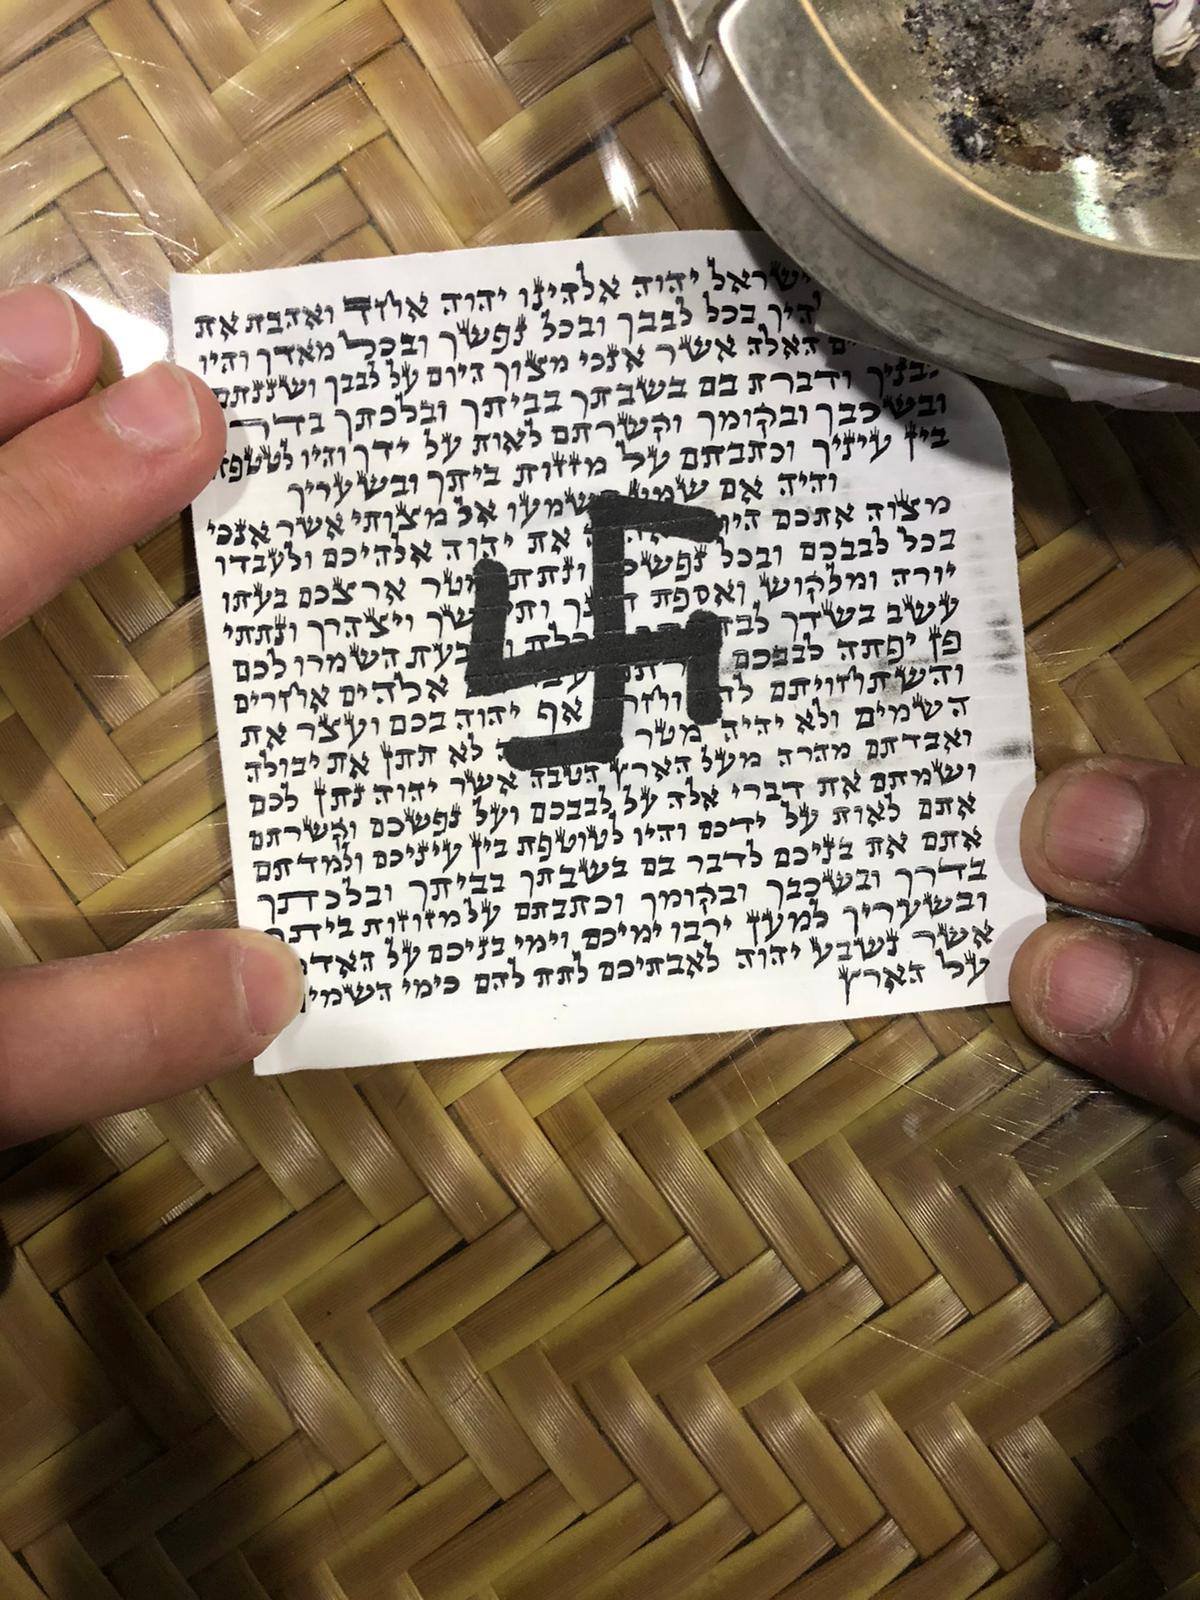 Немачки министар осудио графите кукастог крста на украсном пергаменту у синагоги у Берлину